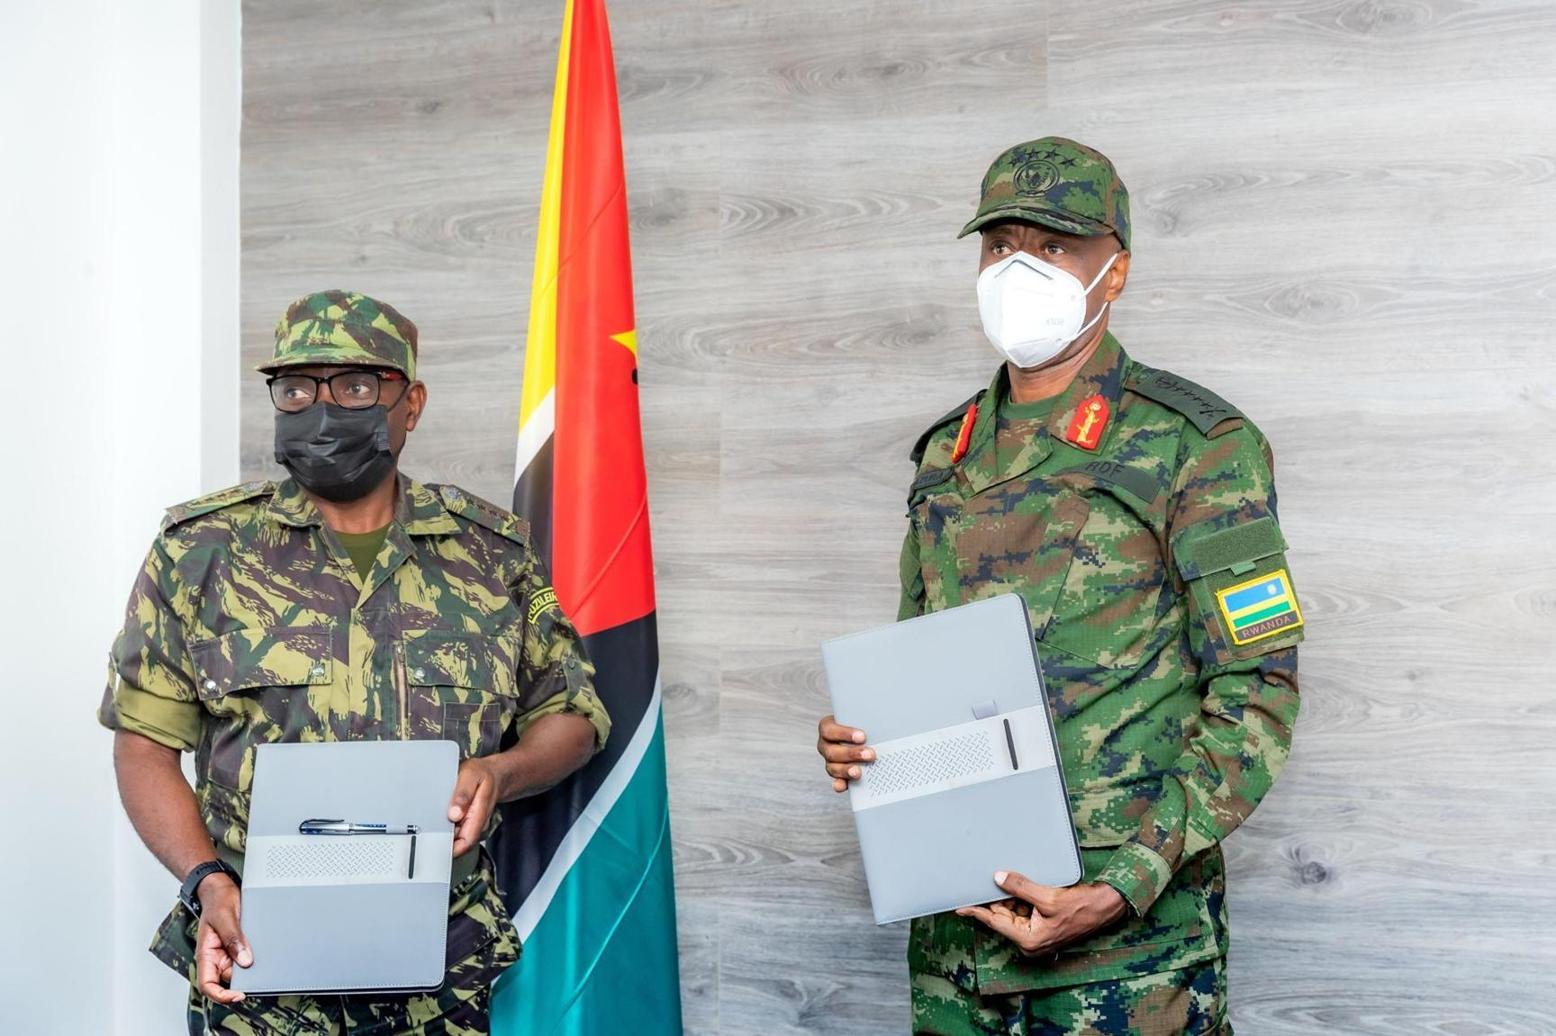 Rwanda to train Mozambique troops